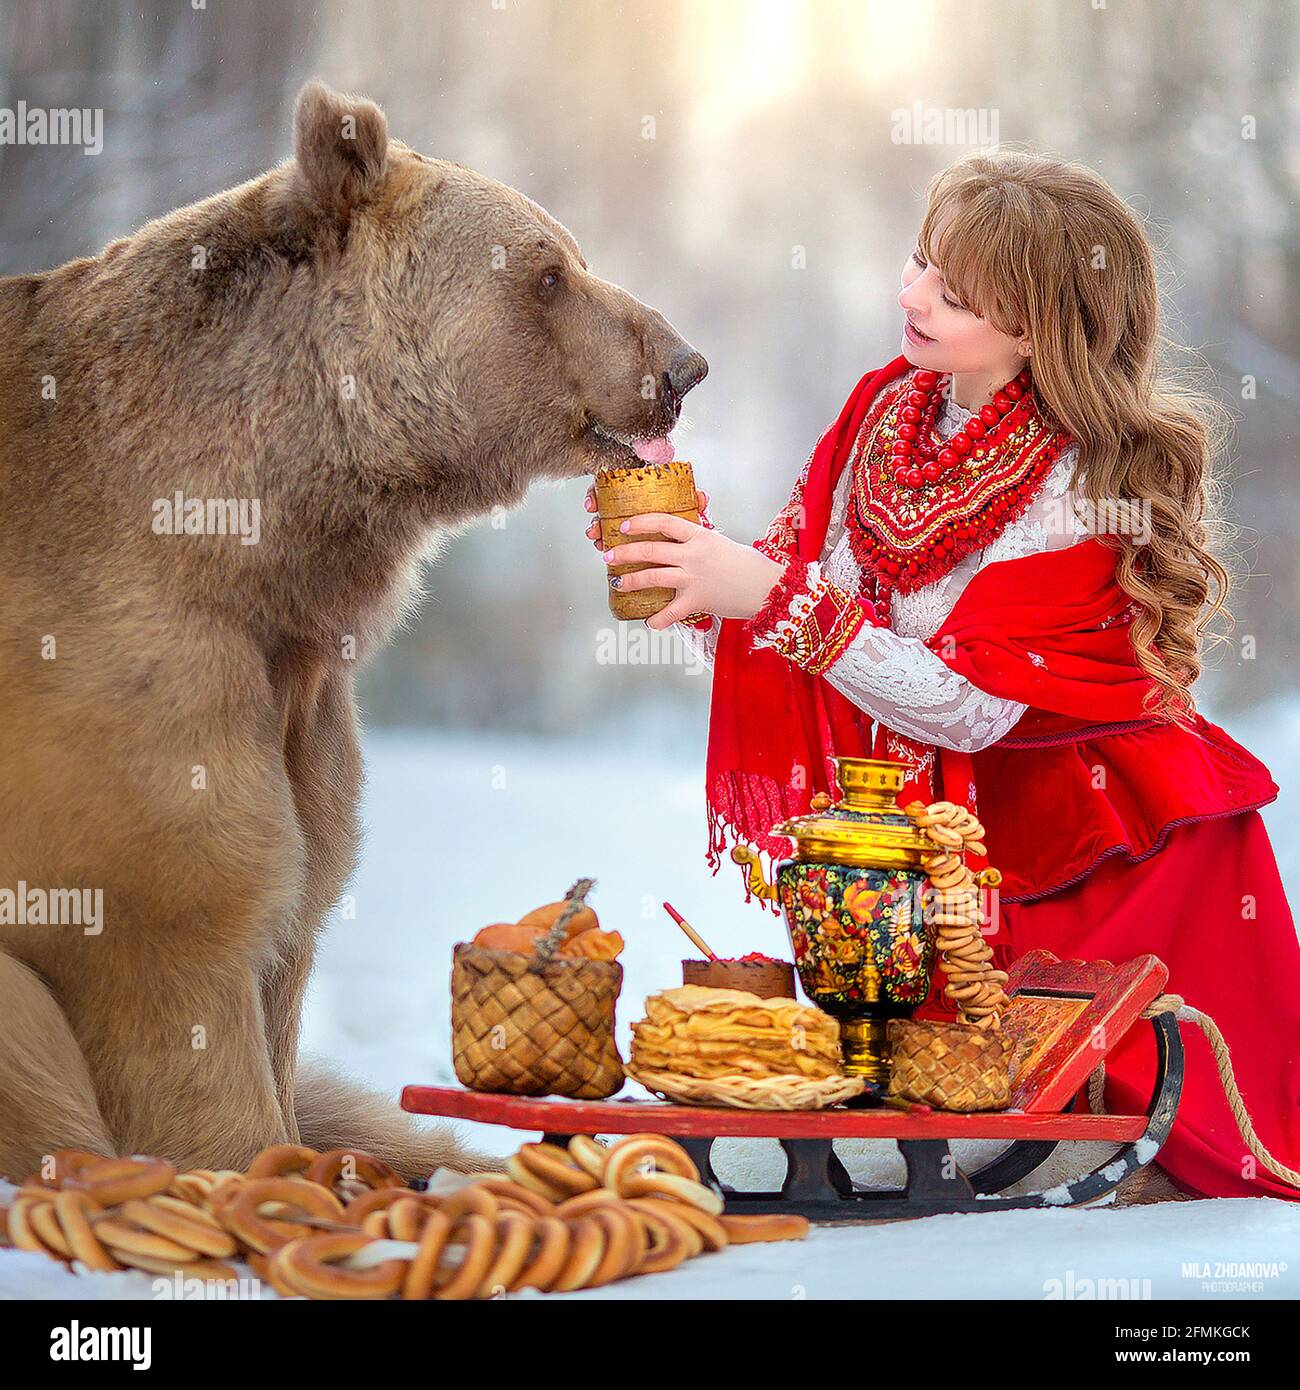 Stepan genießt einen leckeren Snack im Schnee. MOSKAU, RUSSLAND: TREFFEN SIE DEN wahren LEBENSBÄREN, der von seiner Mutter verlassen und von Menschen aufgezogen wurde, die jetzt ein blühendes c haben Stockfoto